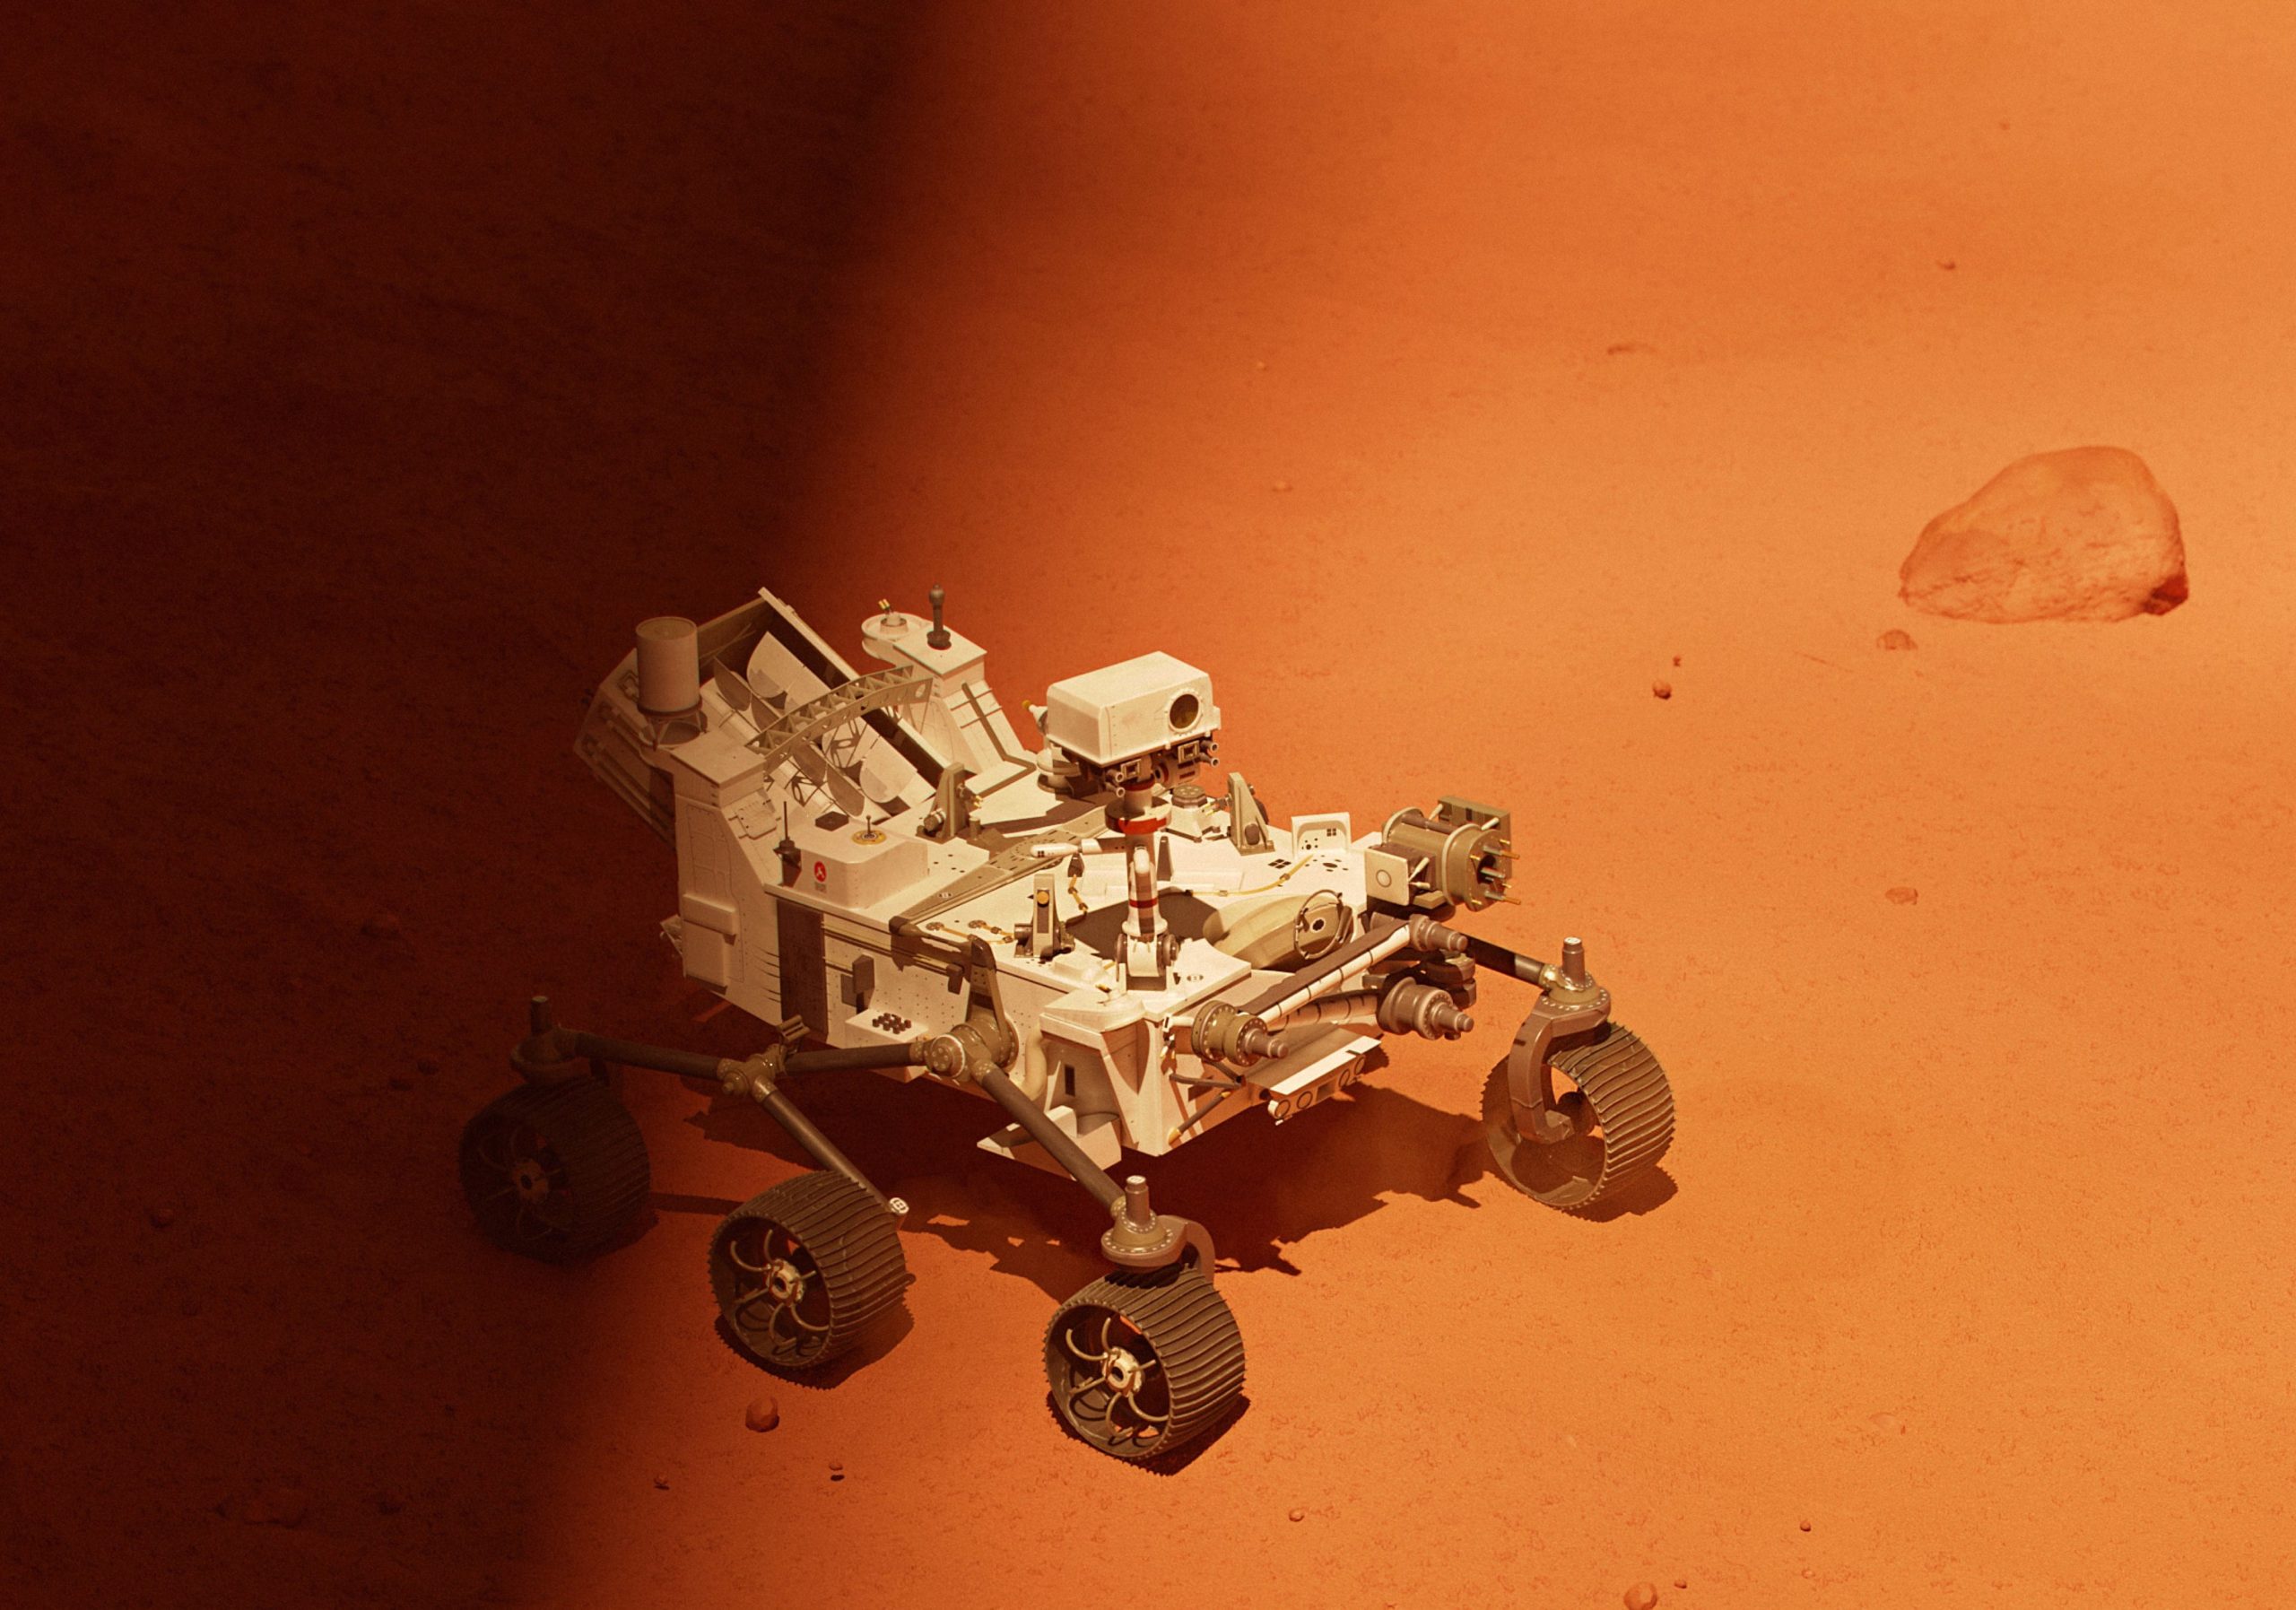 nasa mars 2020 rover